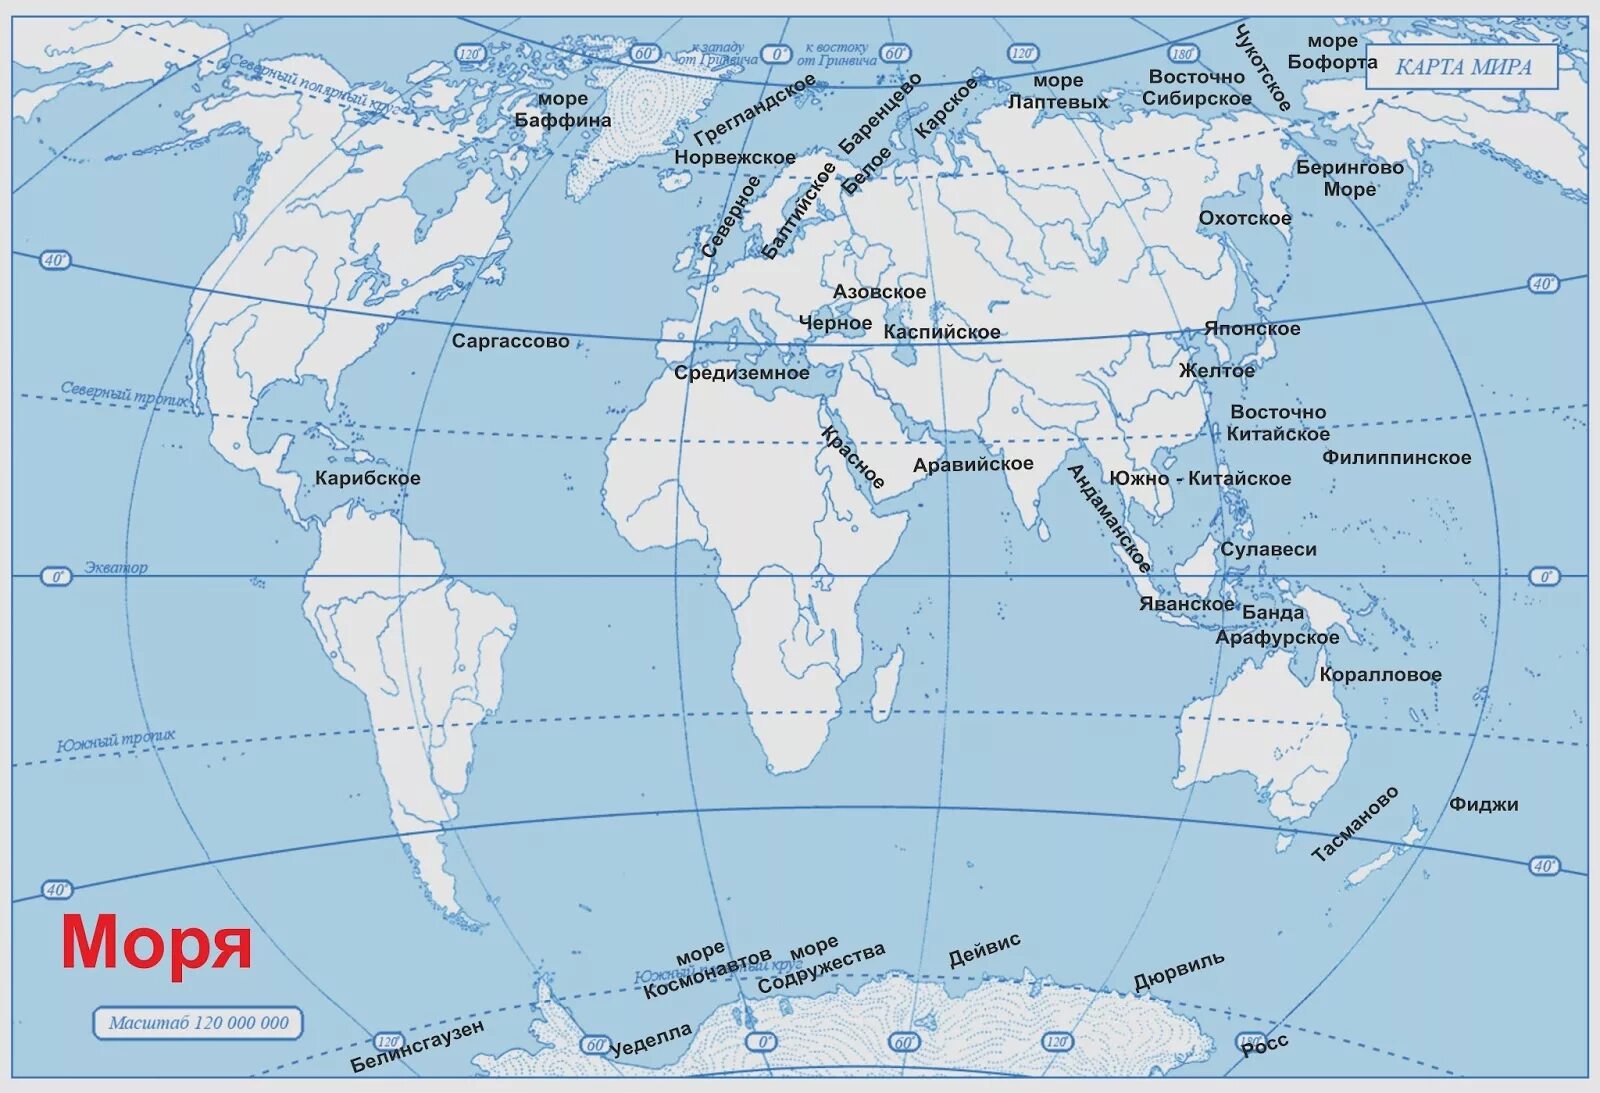 Положение евразии относительно других островов заливов проливов. Моря океаны заливы проливы на карте.